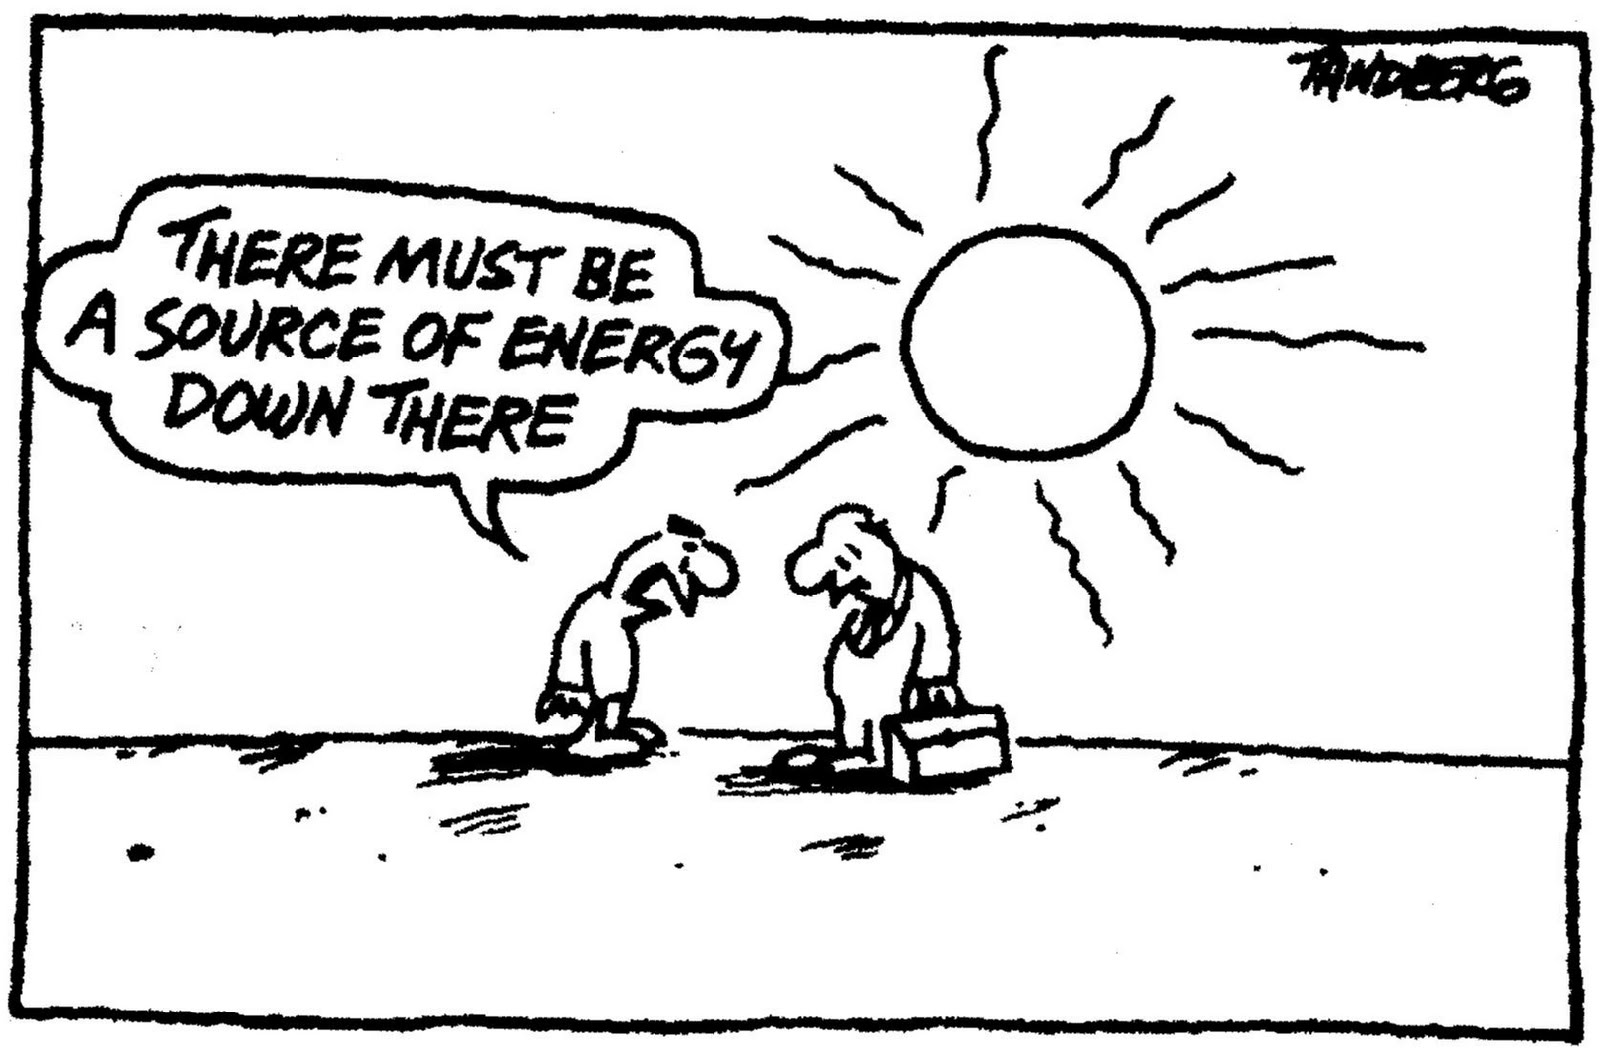 solar-power-energy-cartoon-funny1.jpg